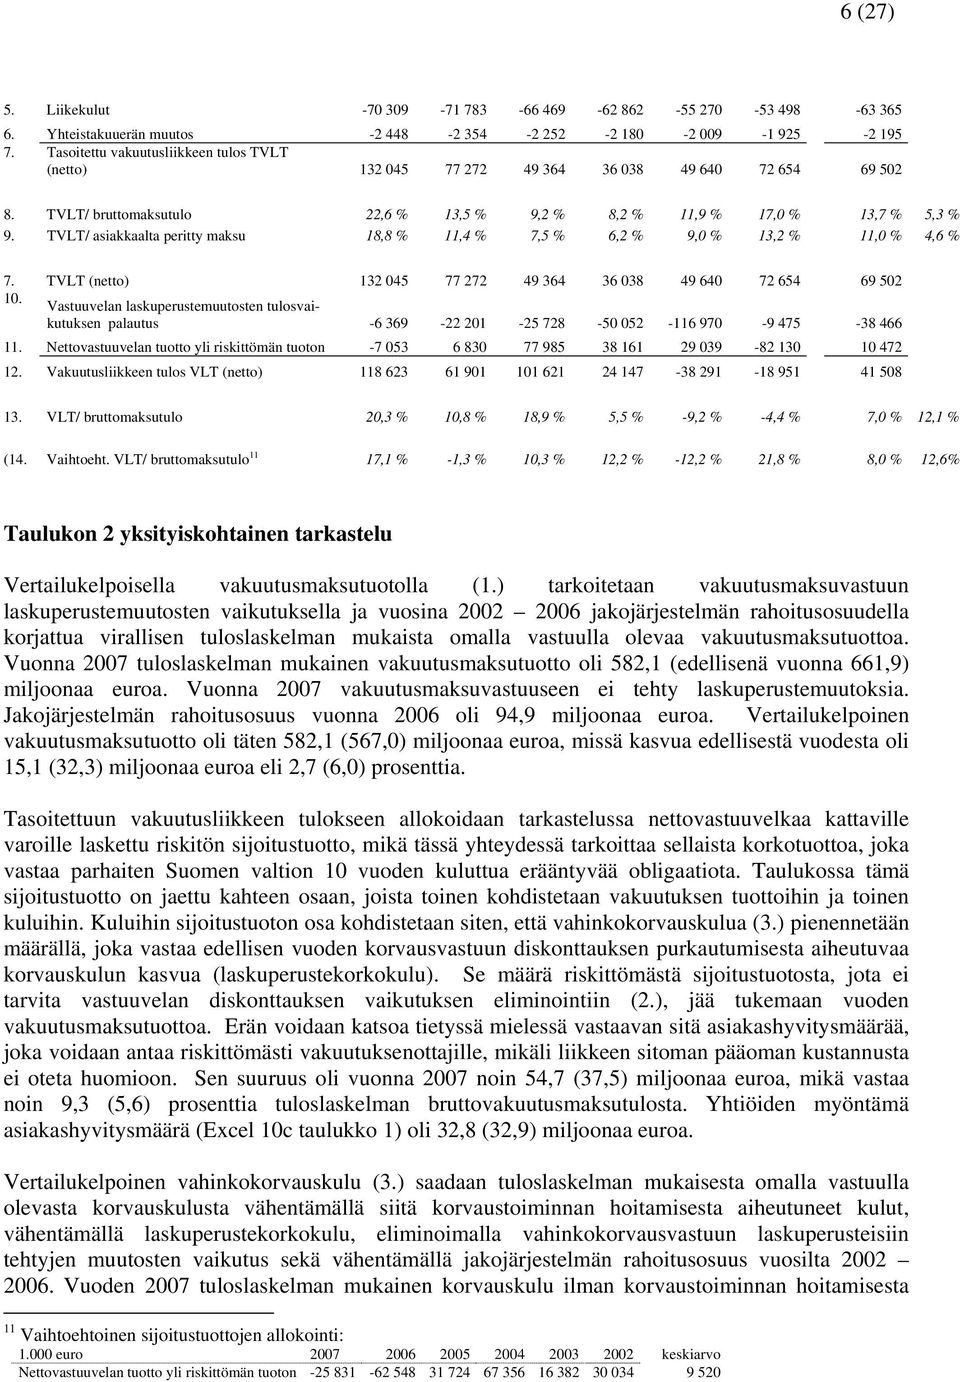 TVLT/ asiakkaalta peritty maksu 18,8 % 11,4 % 7,5 % 6,2 % 9,0 % 13,2 % 11,0 % 4,6 % 7. TVLT (netto) 132 045 77 272 49 364 36 038 49 640 72 654 69 502 10.